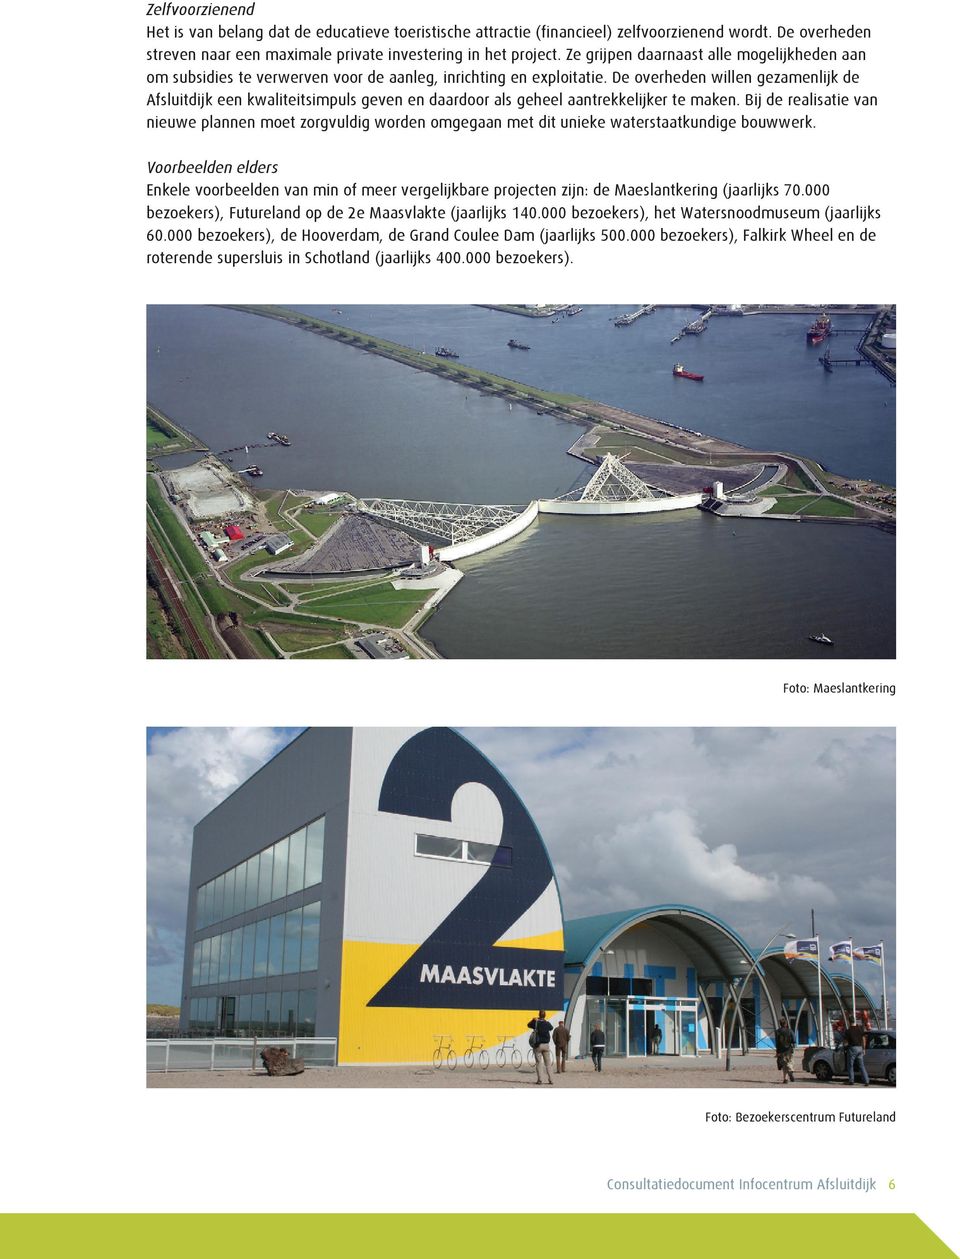 De overheden willen gezamenlijk de Afsluitdijk een kwaliteitsimpuls geven en daardoor als geheel aantrekkelijker te maken.